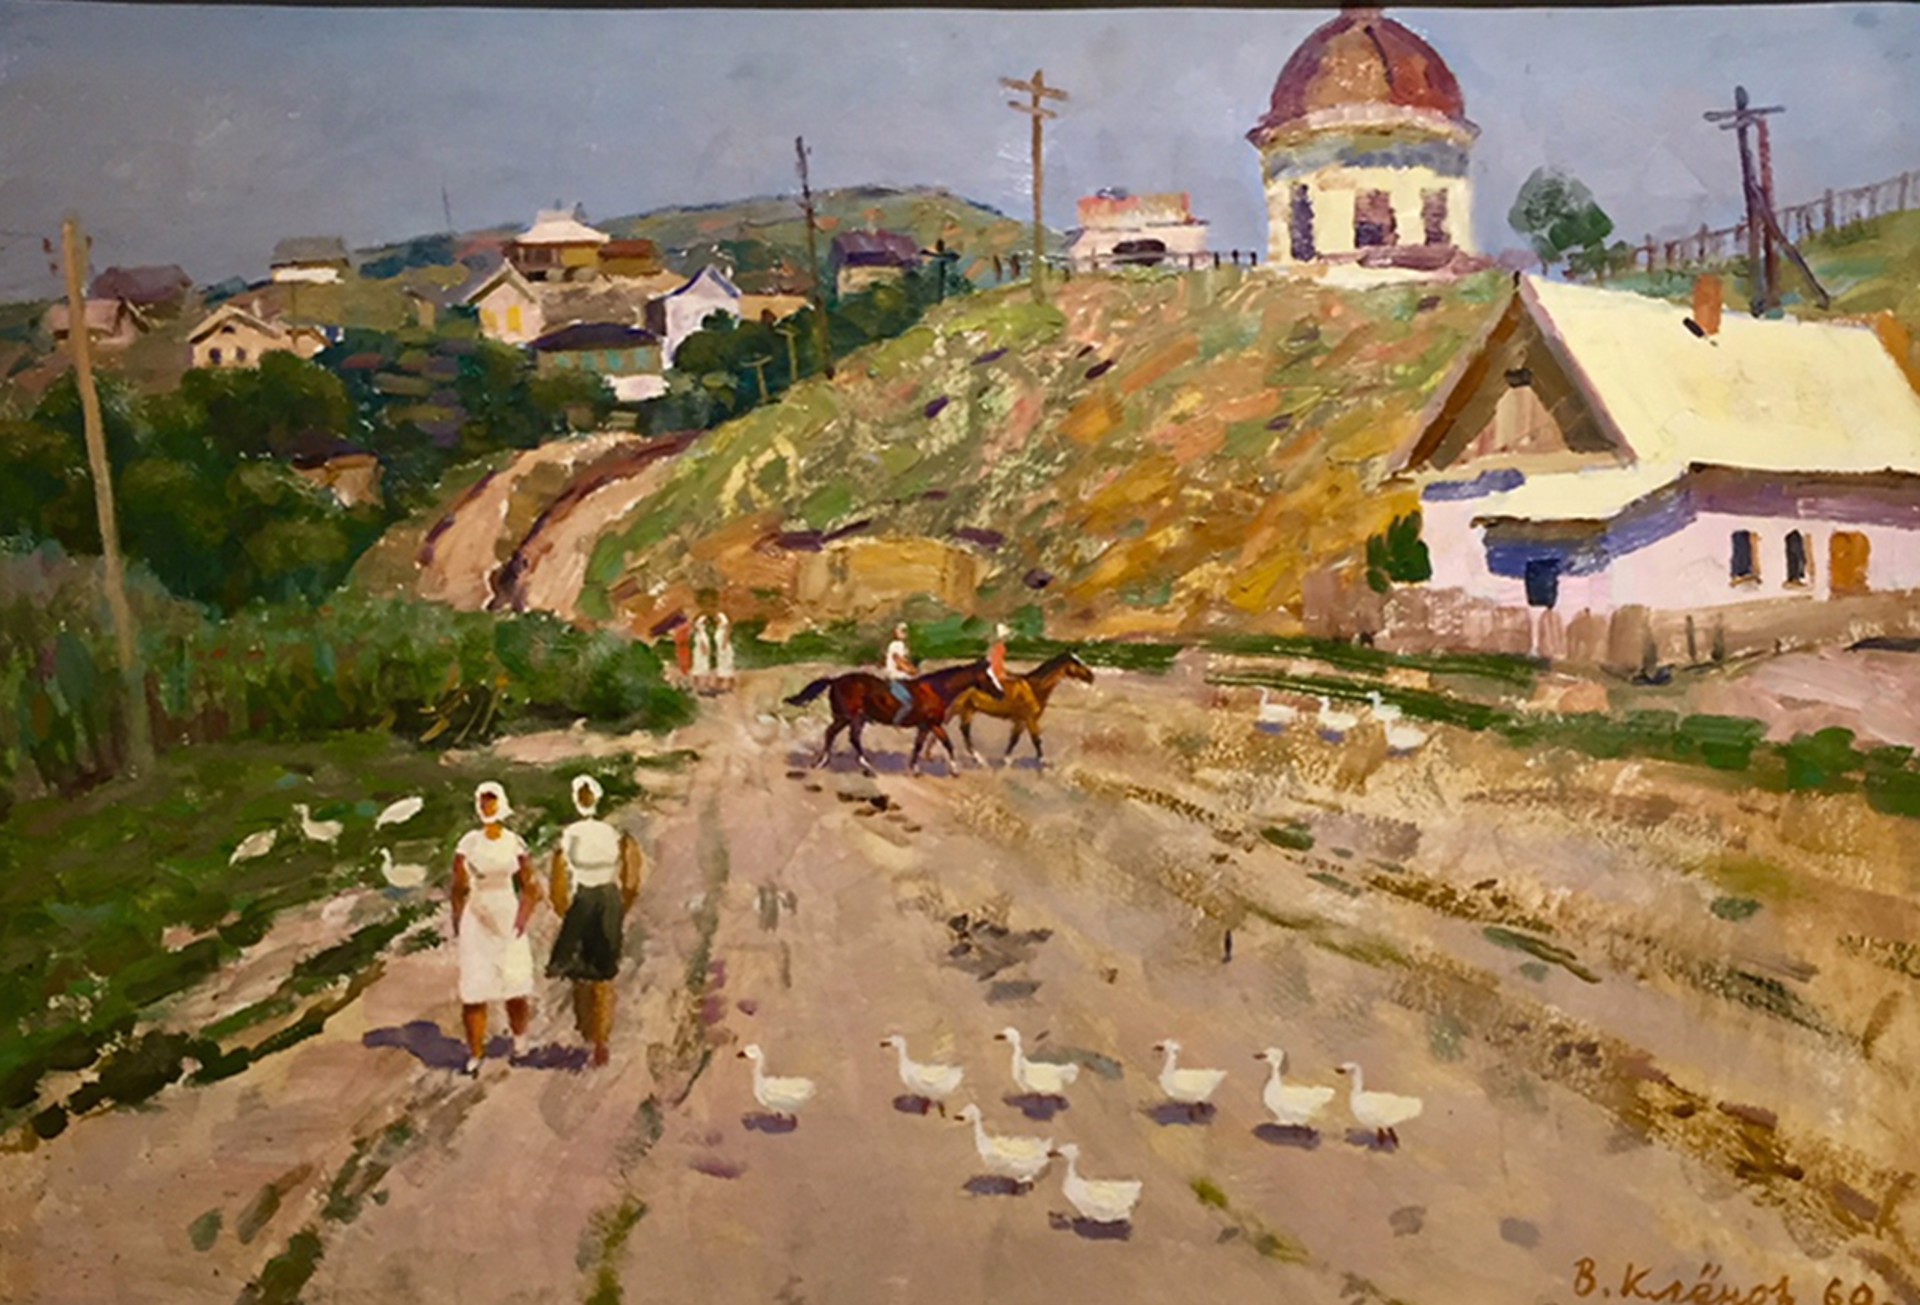 Radzorskaya Village by Vladimir Klionov